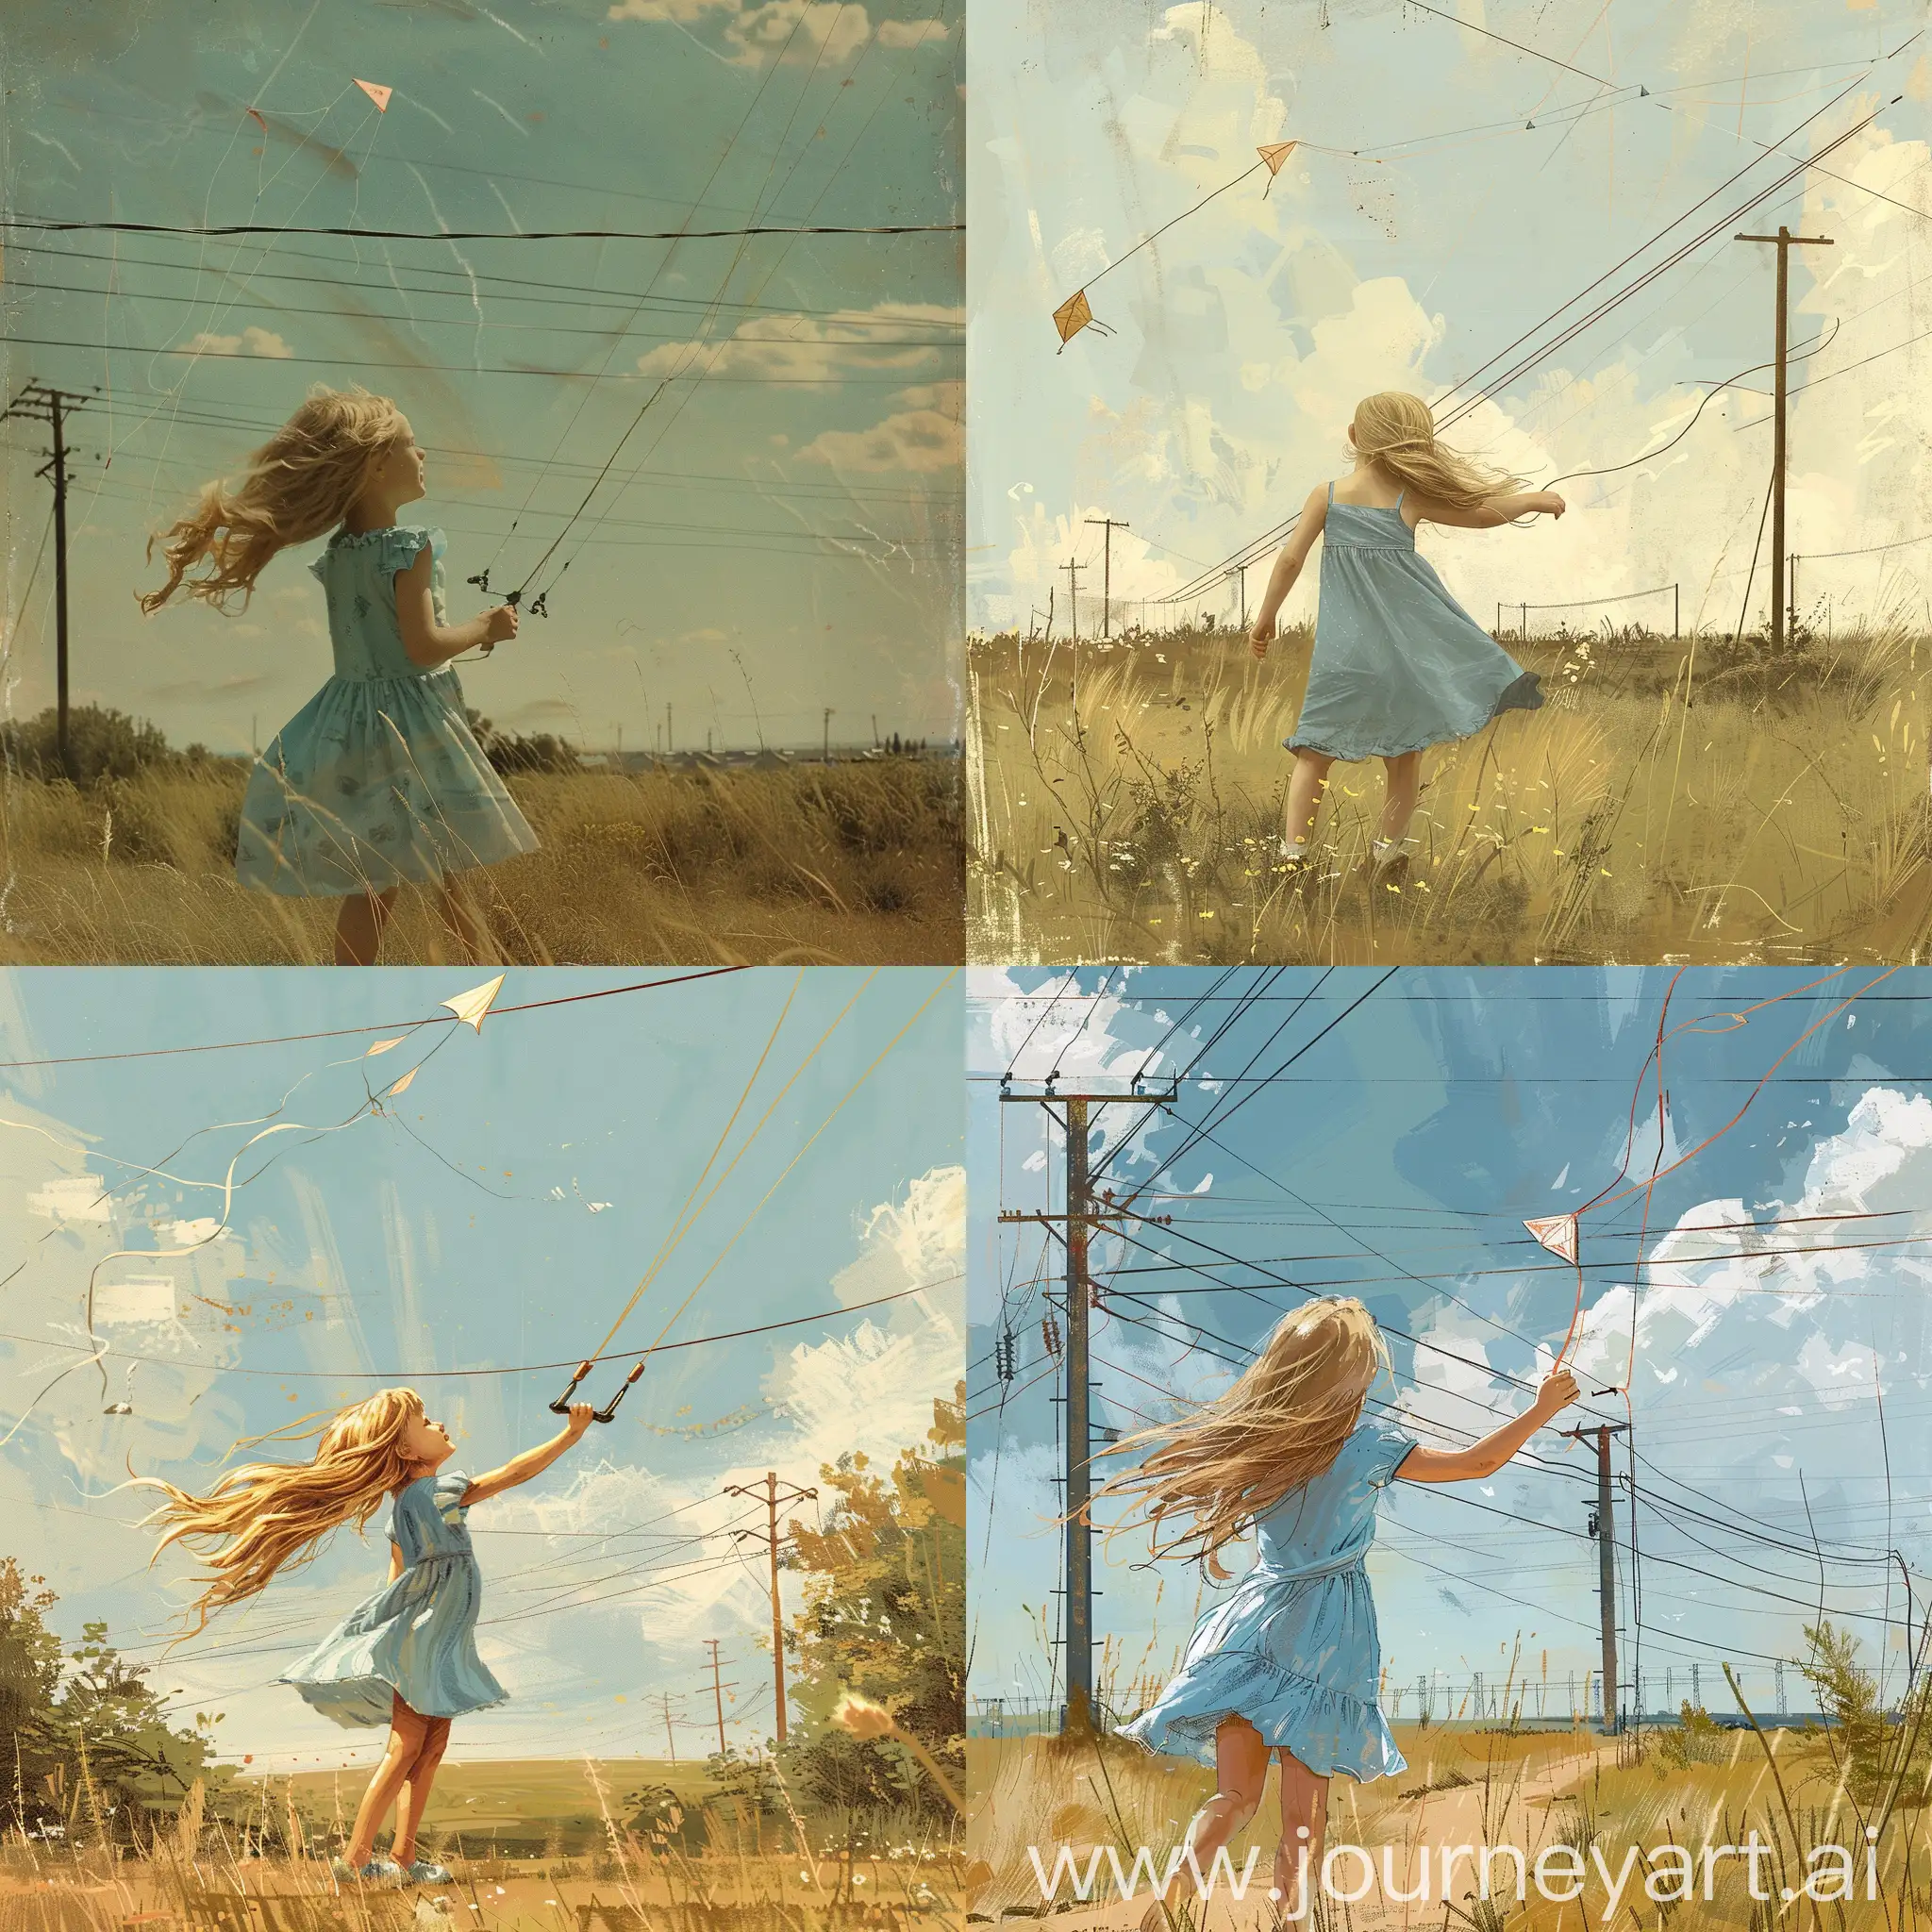 летом маленькая девочка со светлыми длинными волосами в летнем синем платье играет с воздушным змеем в воздухе, на фоне луг и линии электропередачи,  